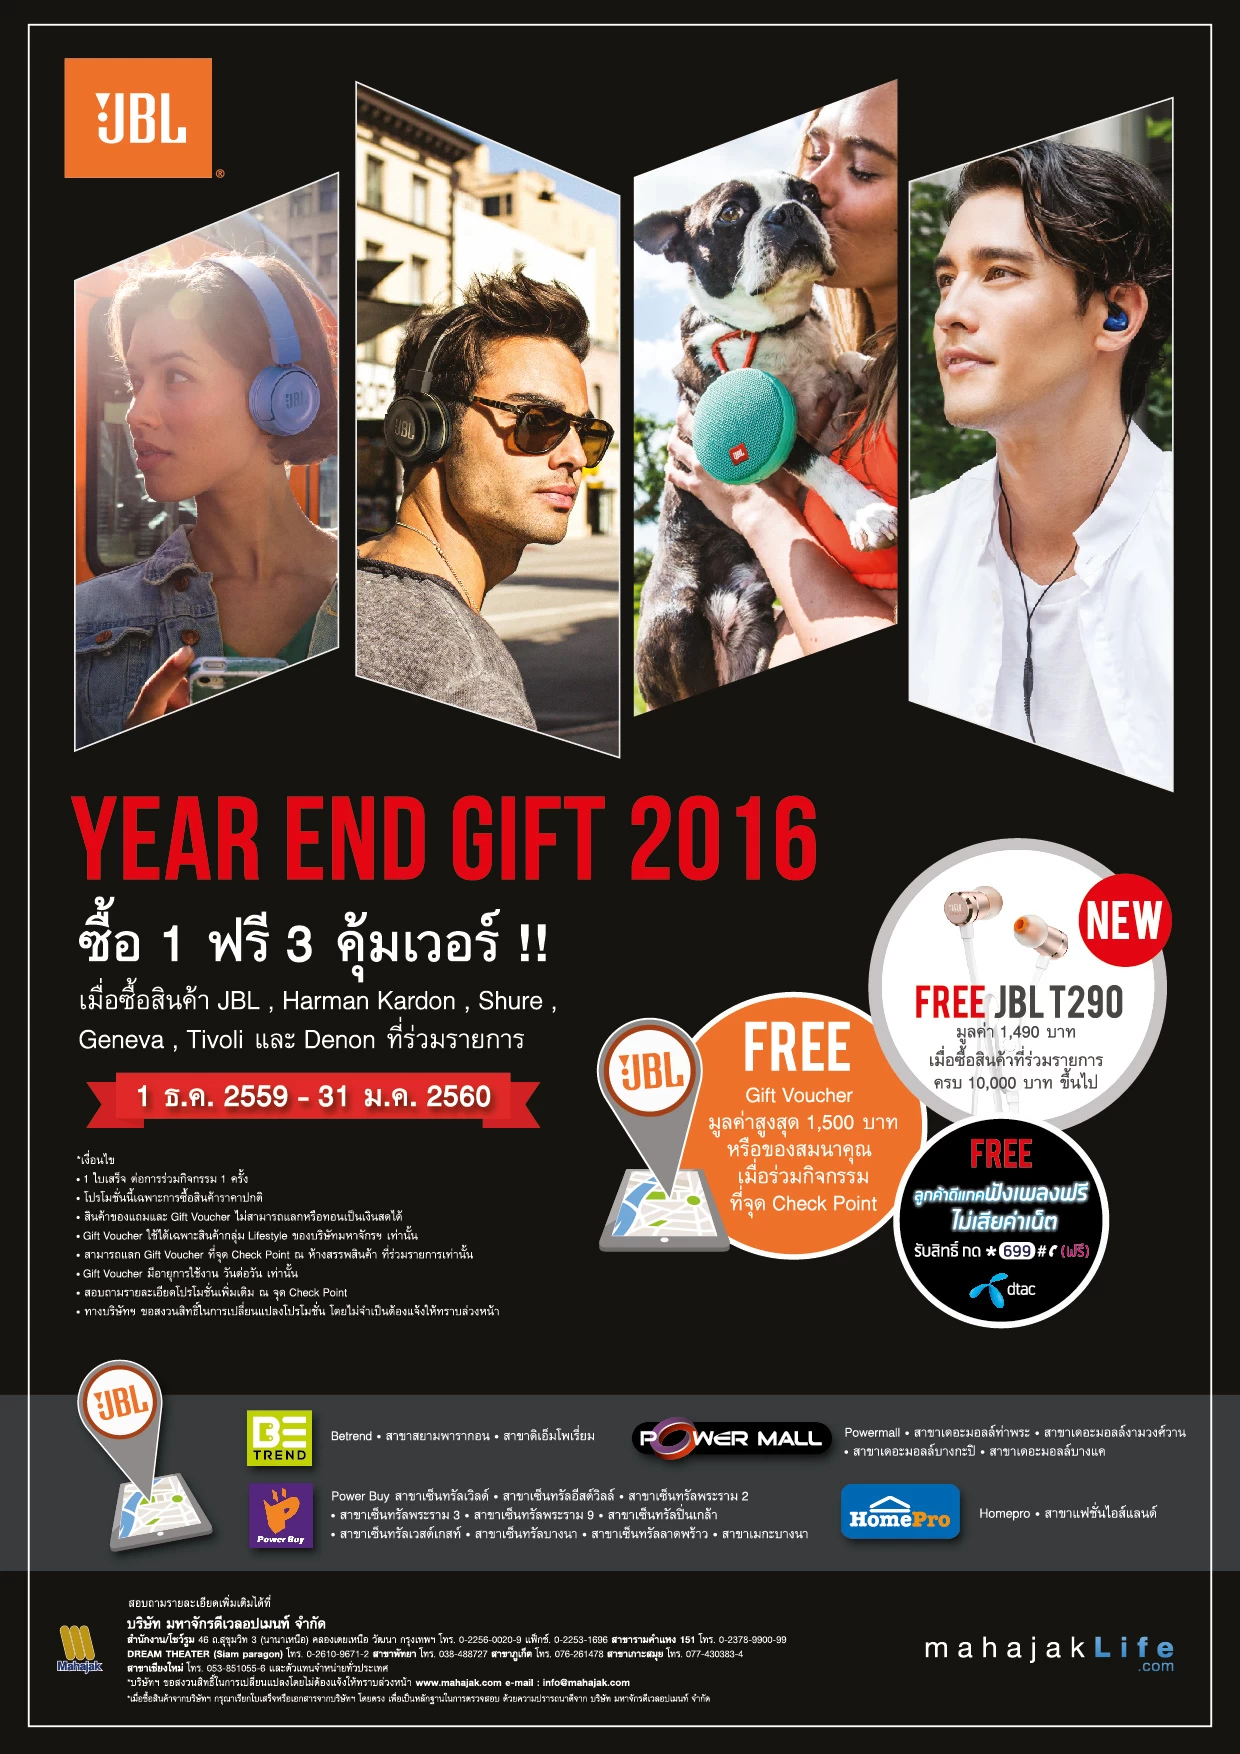 Online Year End Gift 2016 01 | JBL | JBL มอบของขวัญสุดพิเศษแห่งปี ให้กับคุณลูกค้า ซื้อ 1 ฟรี 3 คุ้มเวอร์ แถมหูฟัง T290 มูลค่าพันสี่ ในเดือนธันวานี้